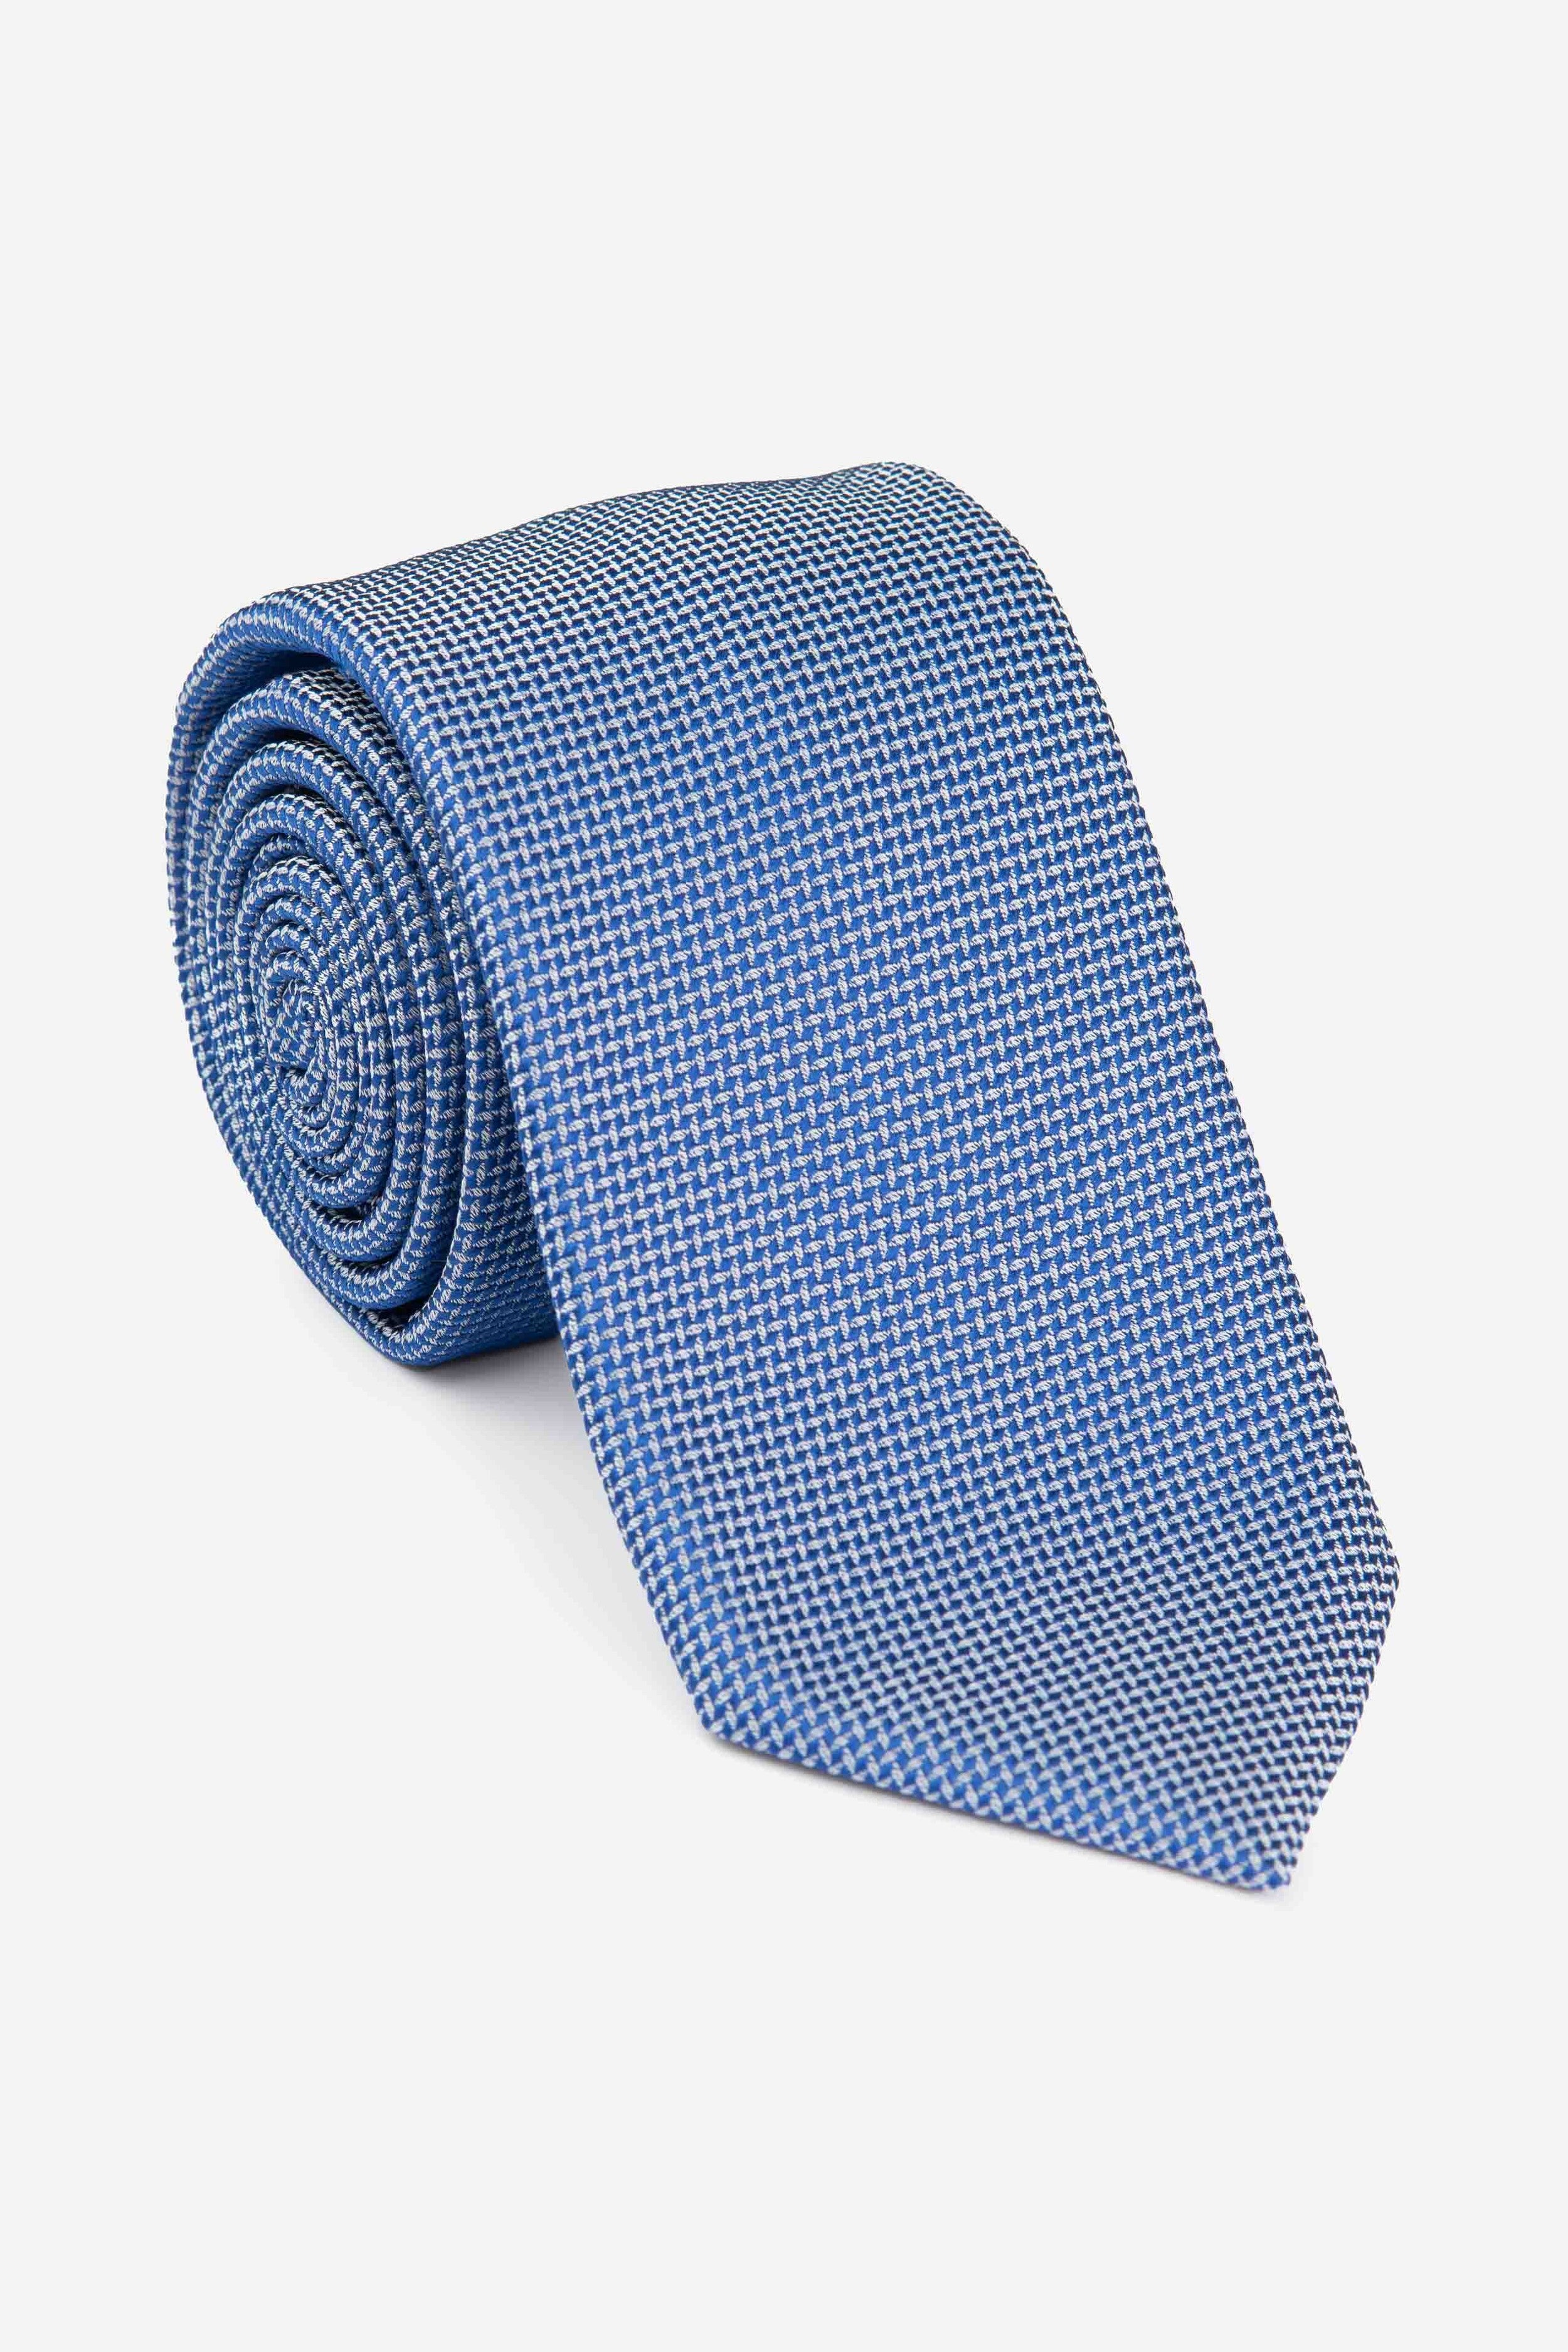 Blue tie - Royal blue